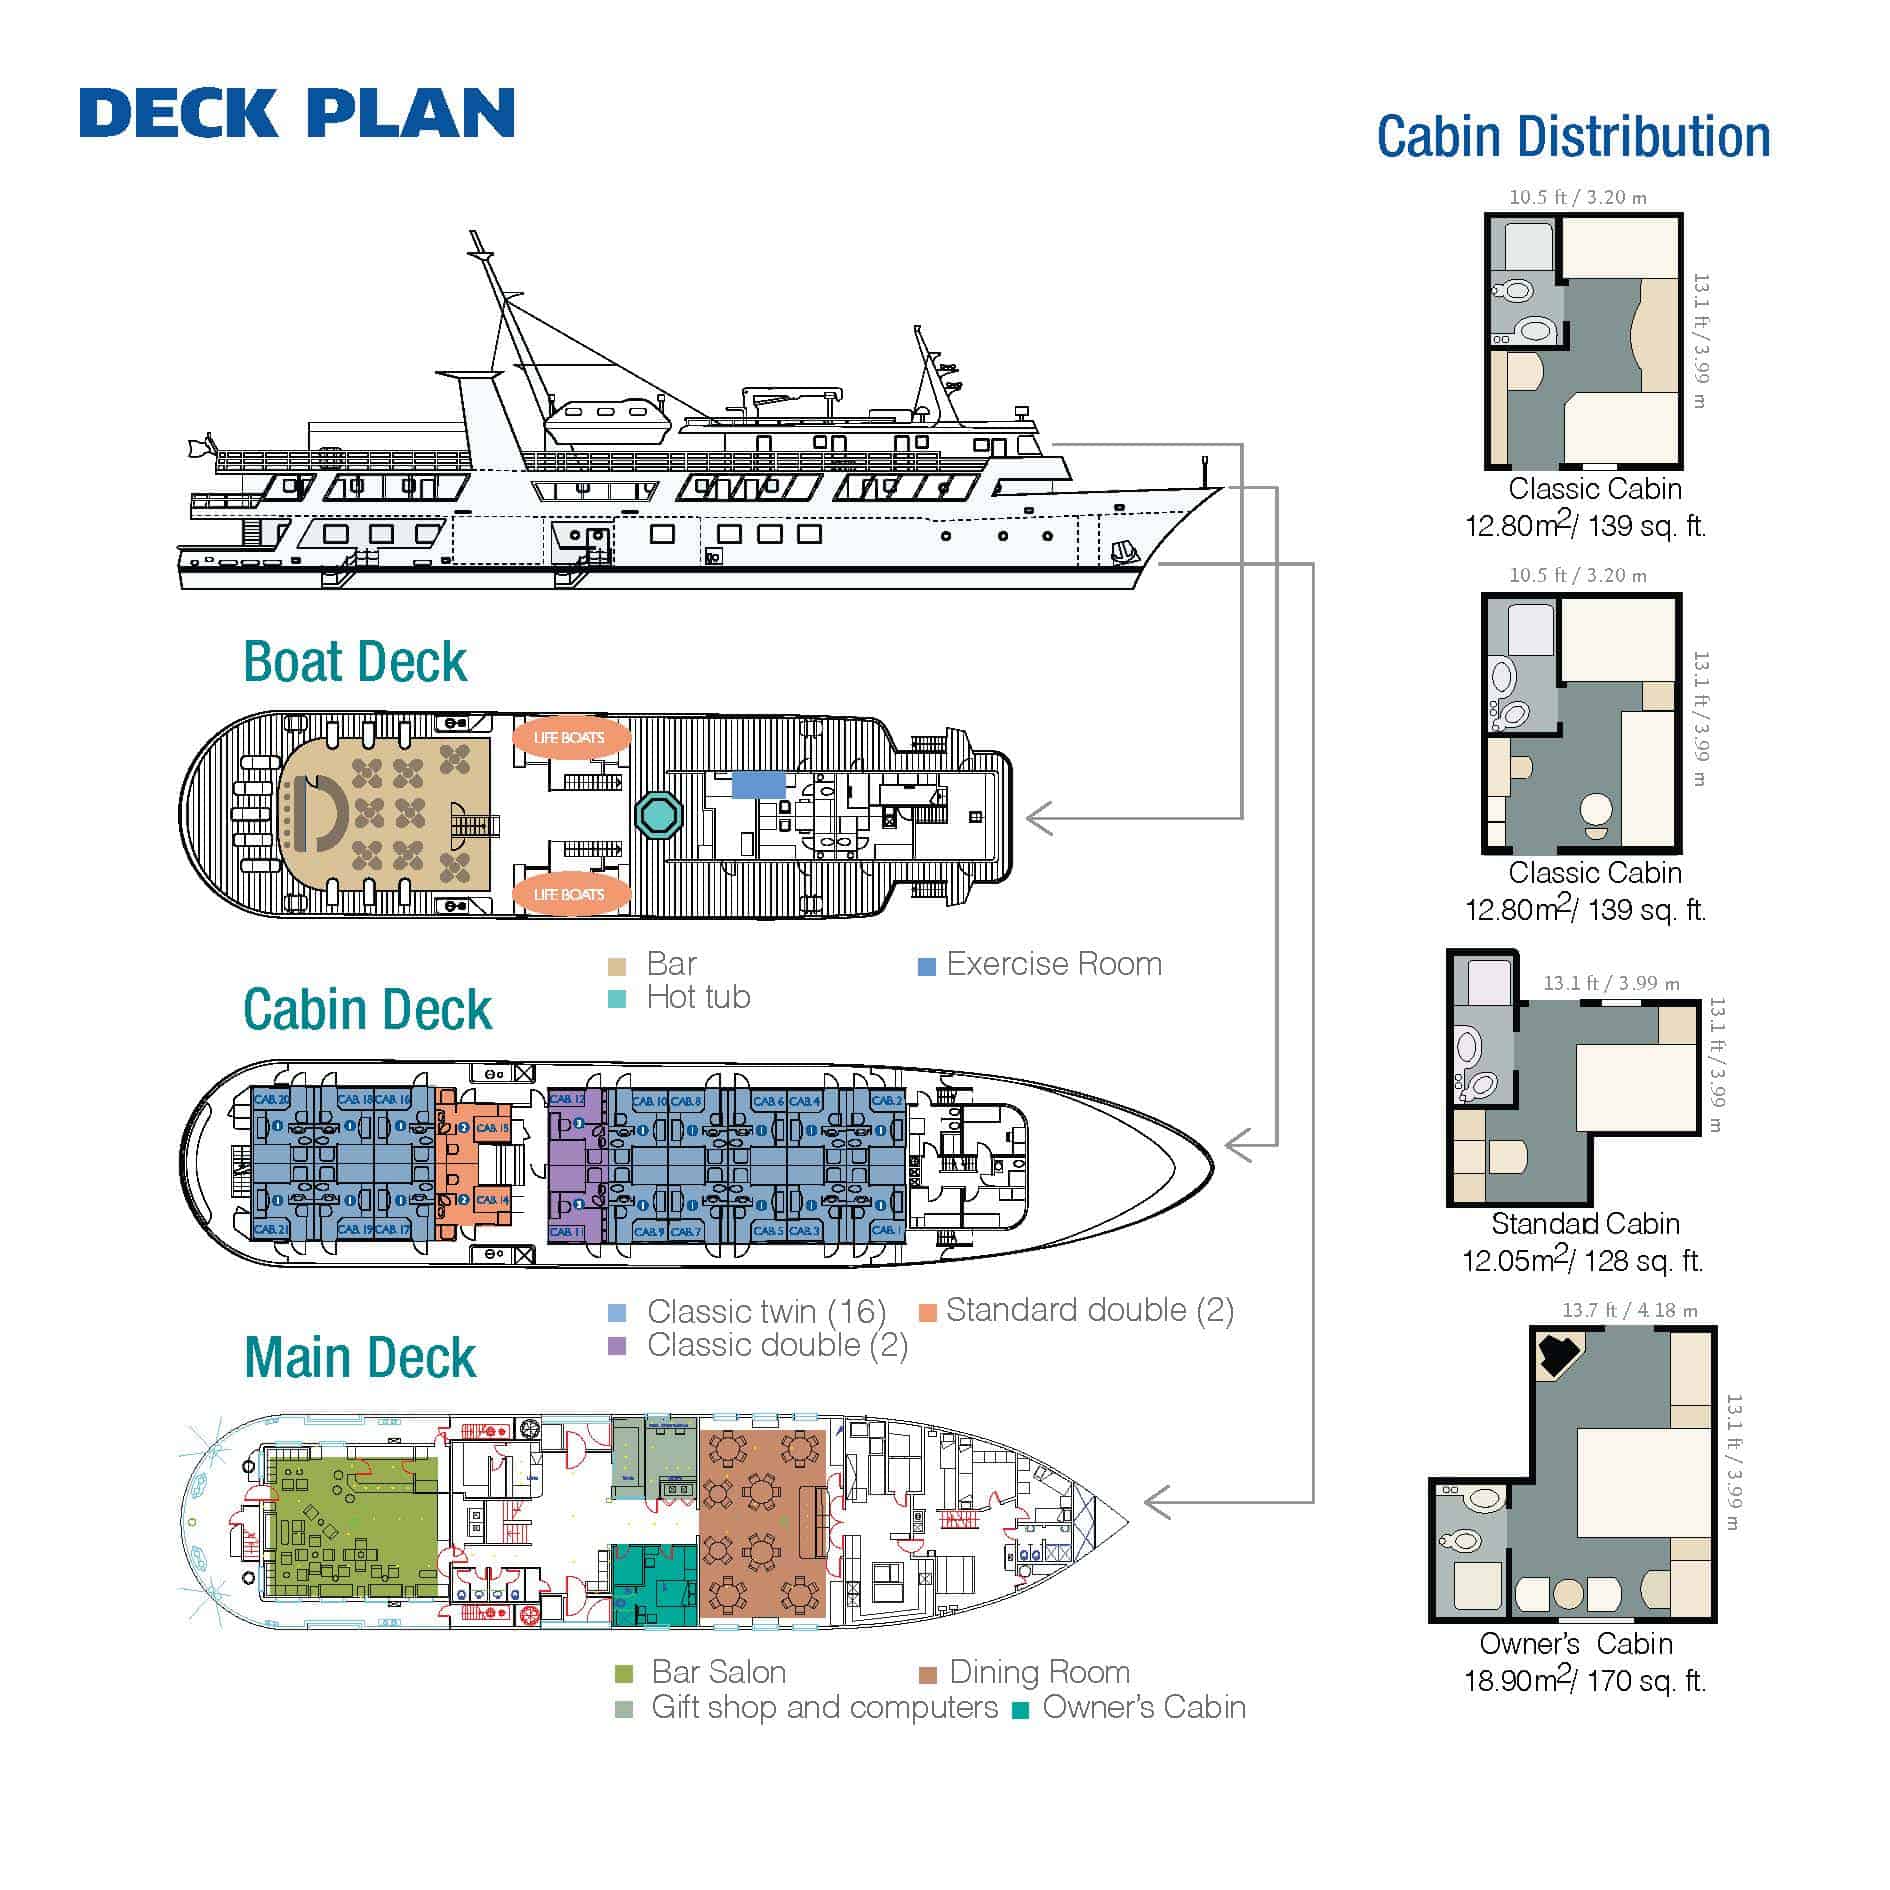 Isabela II deck plan showing 3 passenger decks